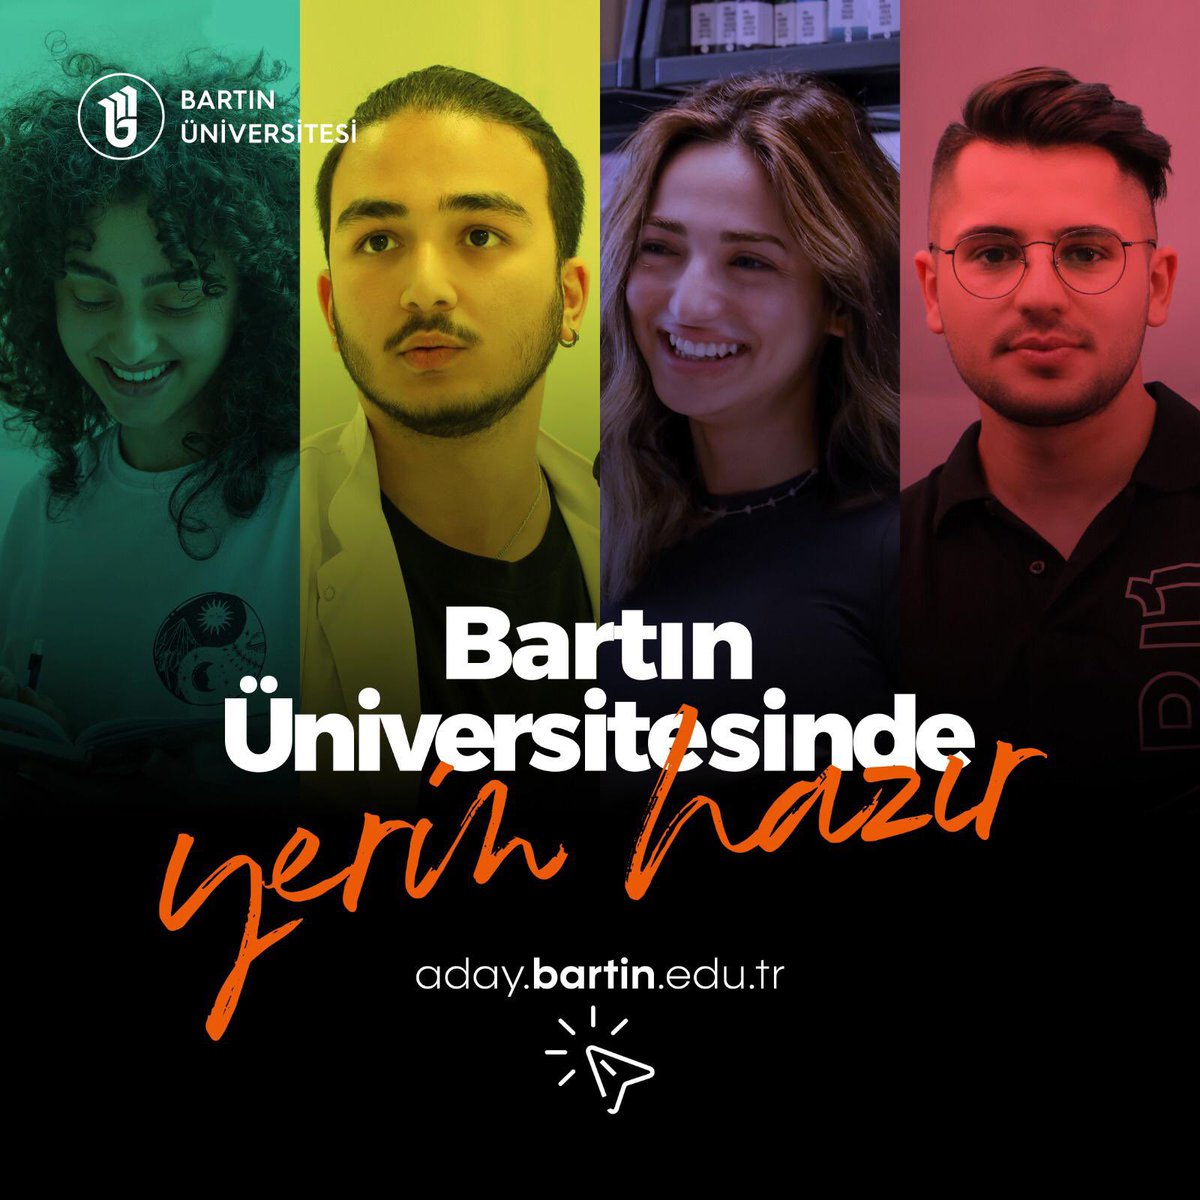 Bartın Üniversitesinde #YerinHazır

💻aday.bartin.edu.tr

@bartinedu @uzun_orhan 

#bartın #bartınüniversitesi #yks2022 #tercih2022 #ykstercih